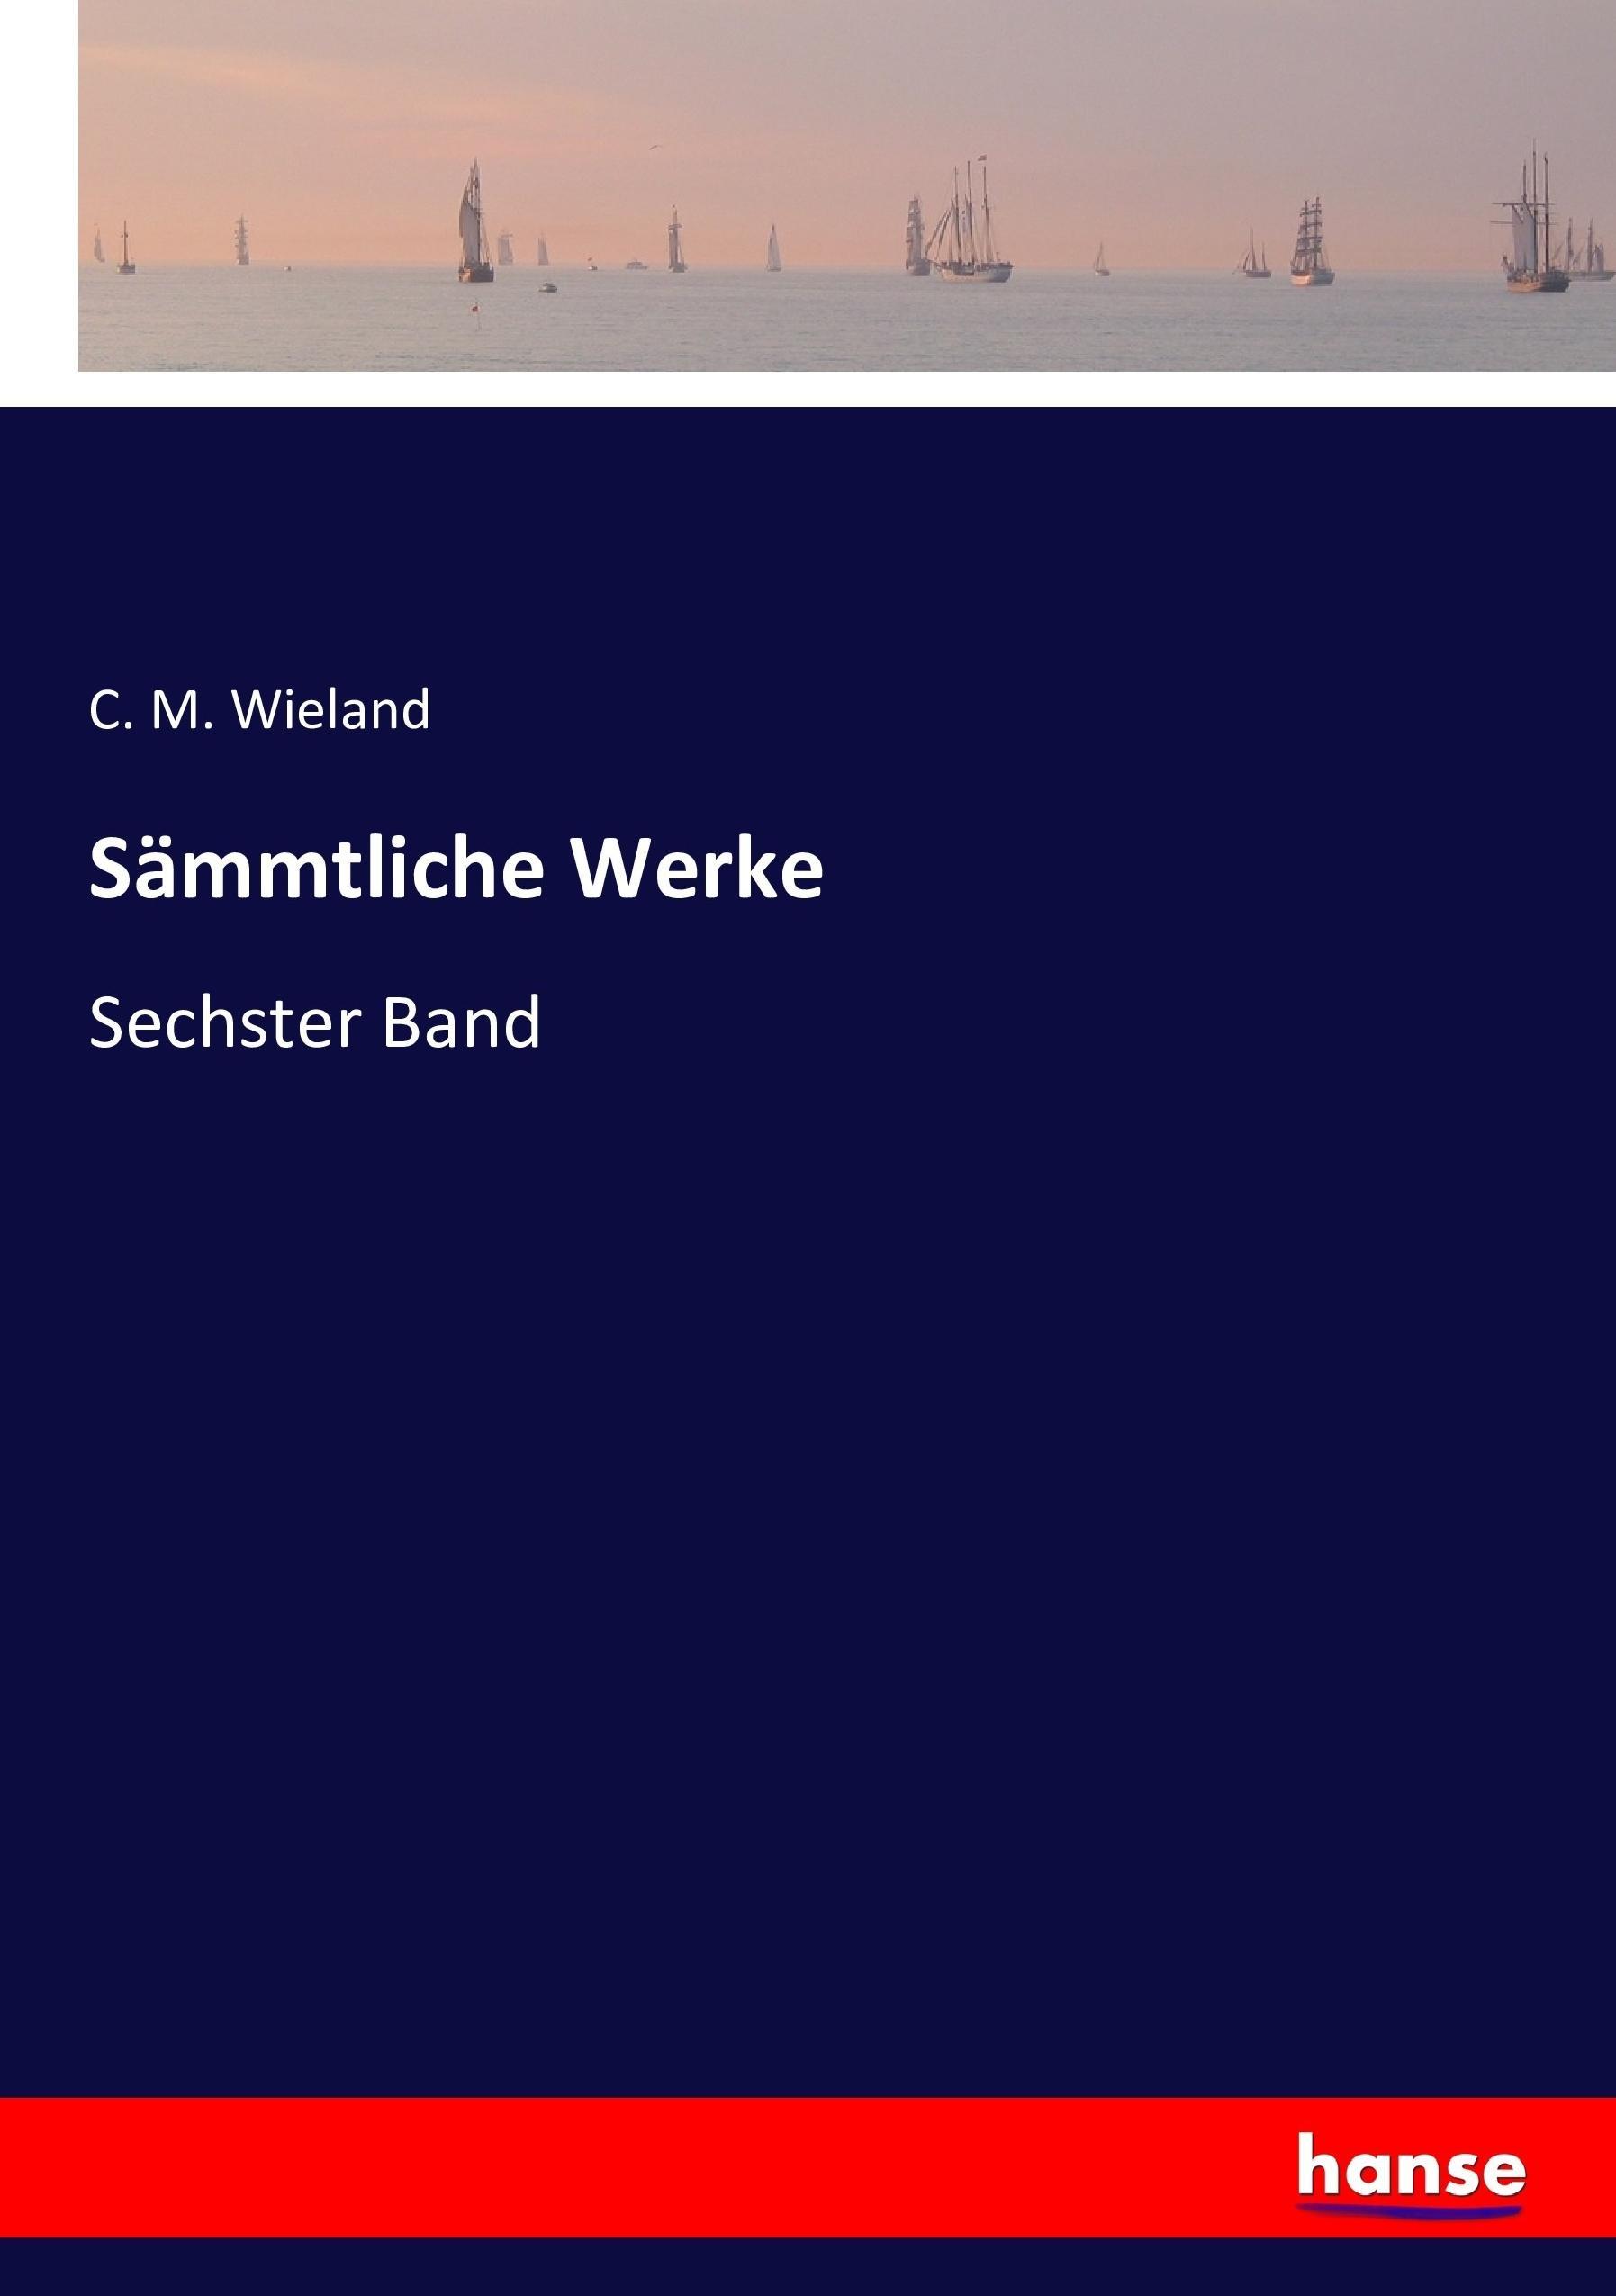 Sämmtliche Werke / Sechster Band / C. M. Wieland / Taschenbuch / Paperback / 324 S. / Deutsch / 2016 / hansebooks / EAN 9783743319806 - Wieland, C. M.